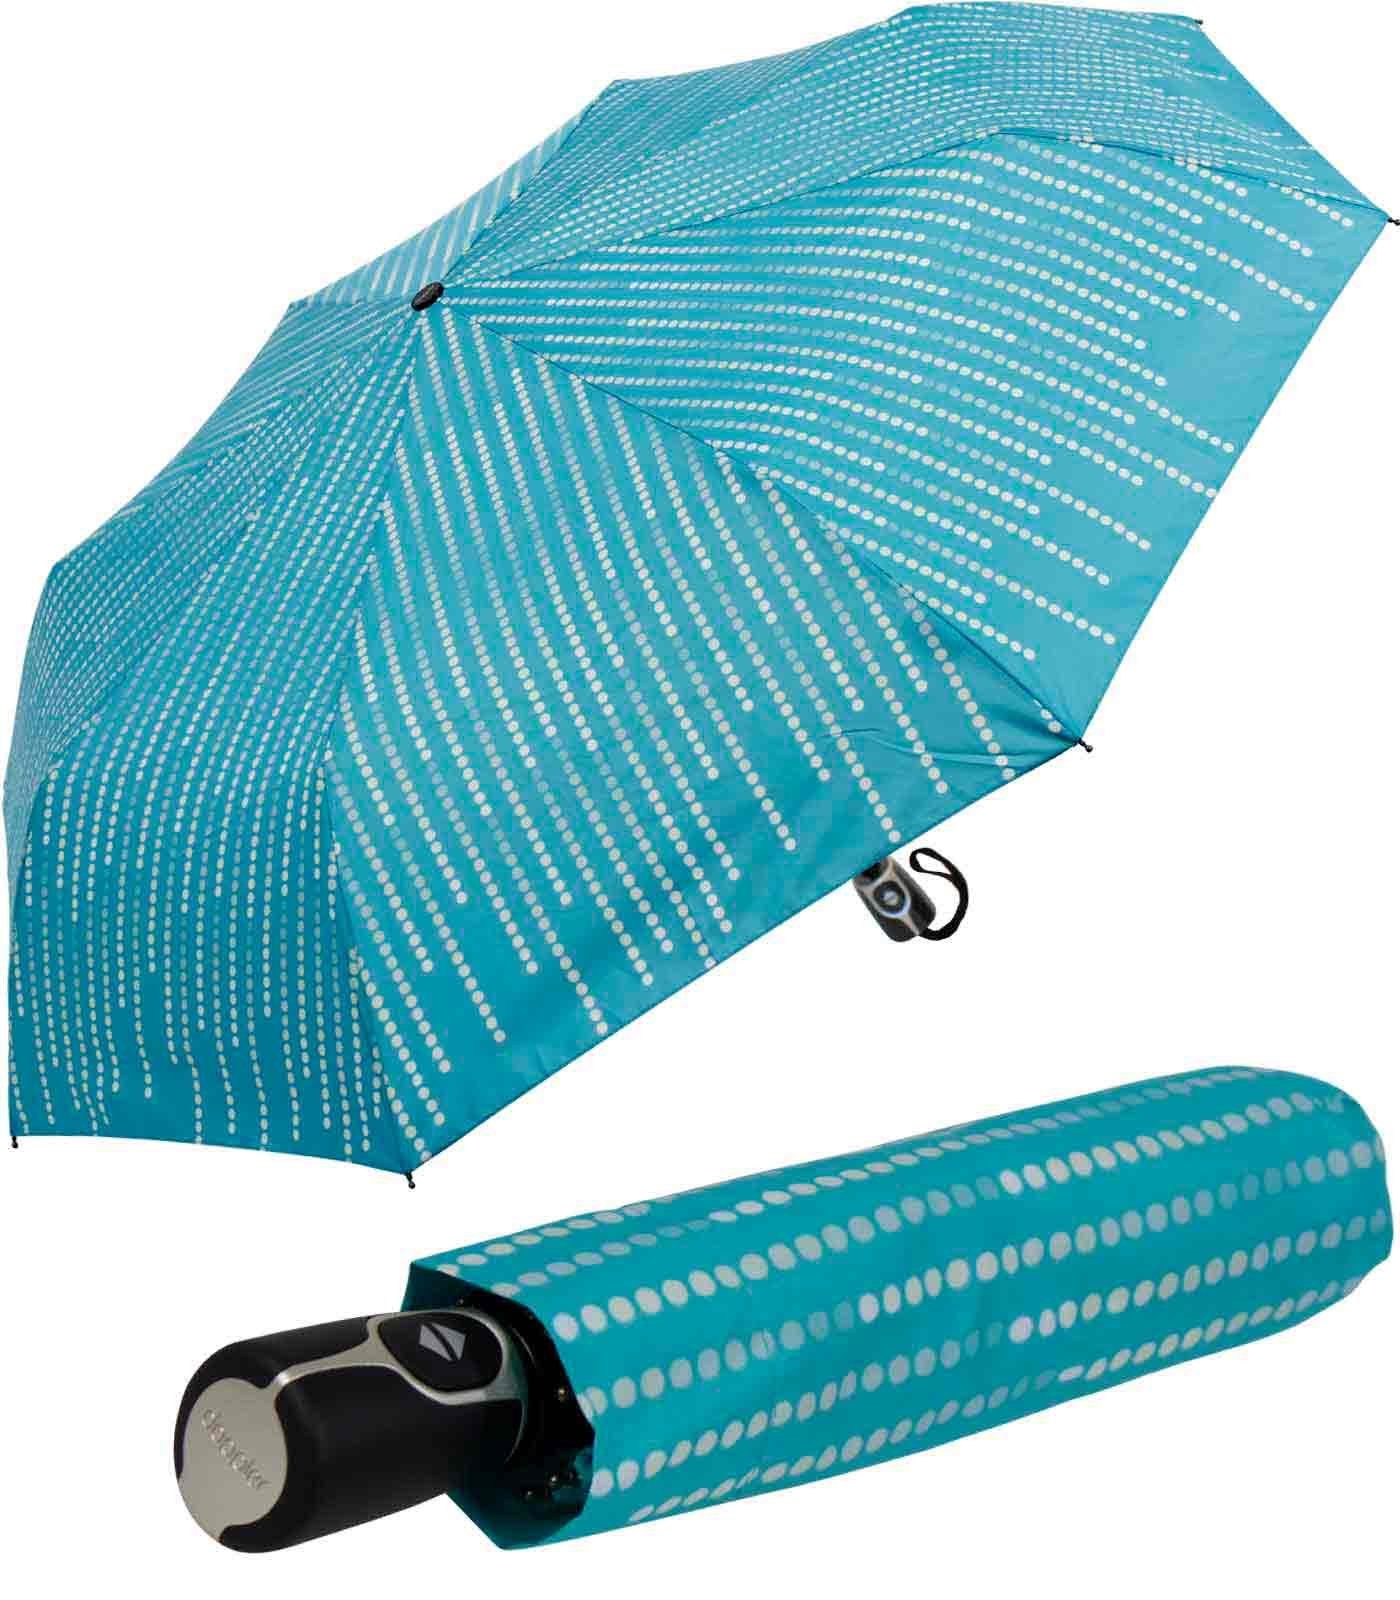 Sonnenschirm Magic doppler® und Damen - nutzbar elegant, Fiber stabil Taschenregenschirm als UV-Schutz Glamour, blau Auf-Zu